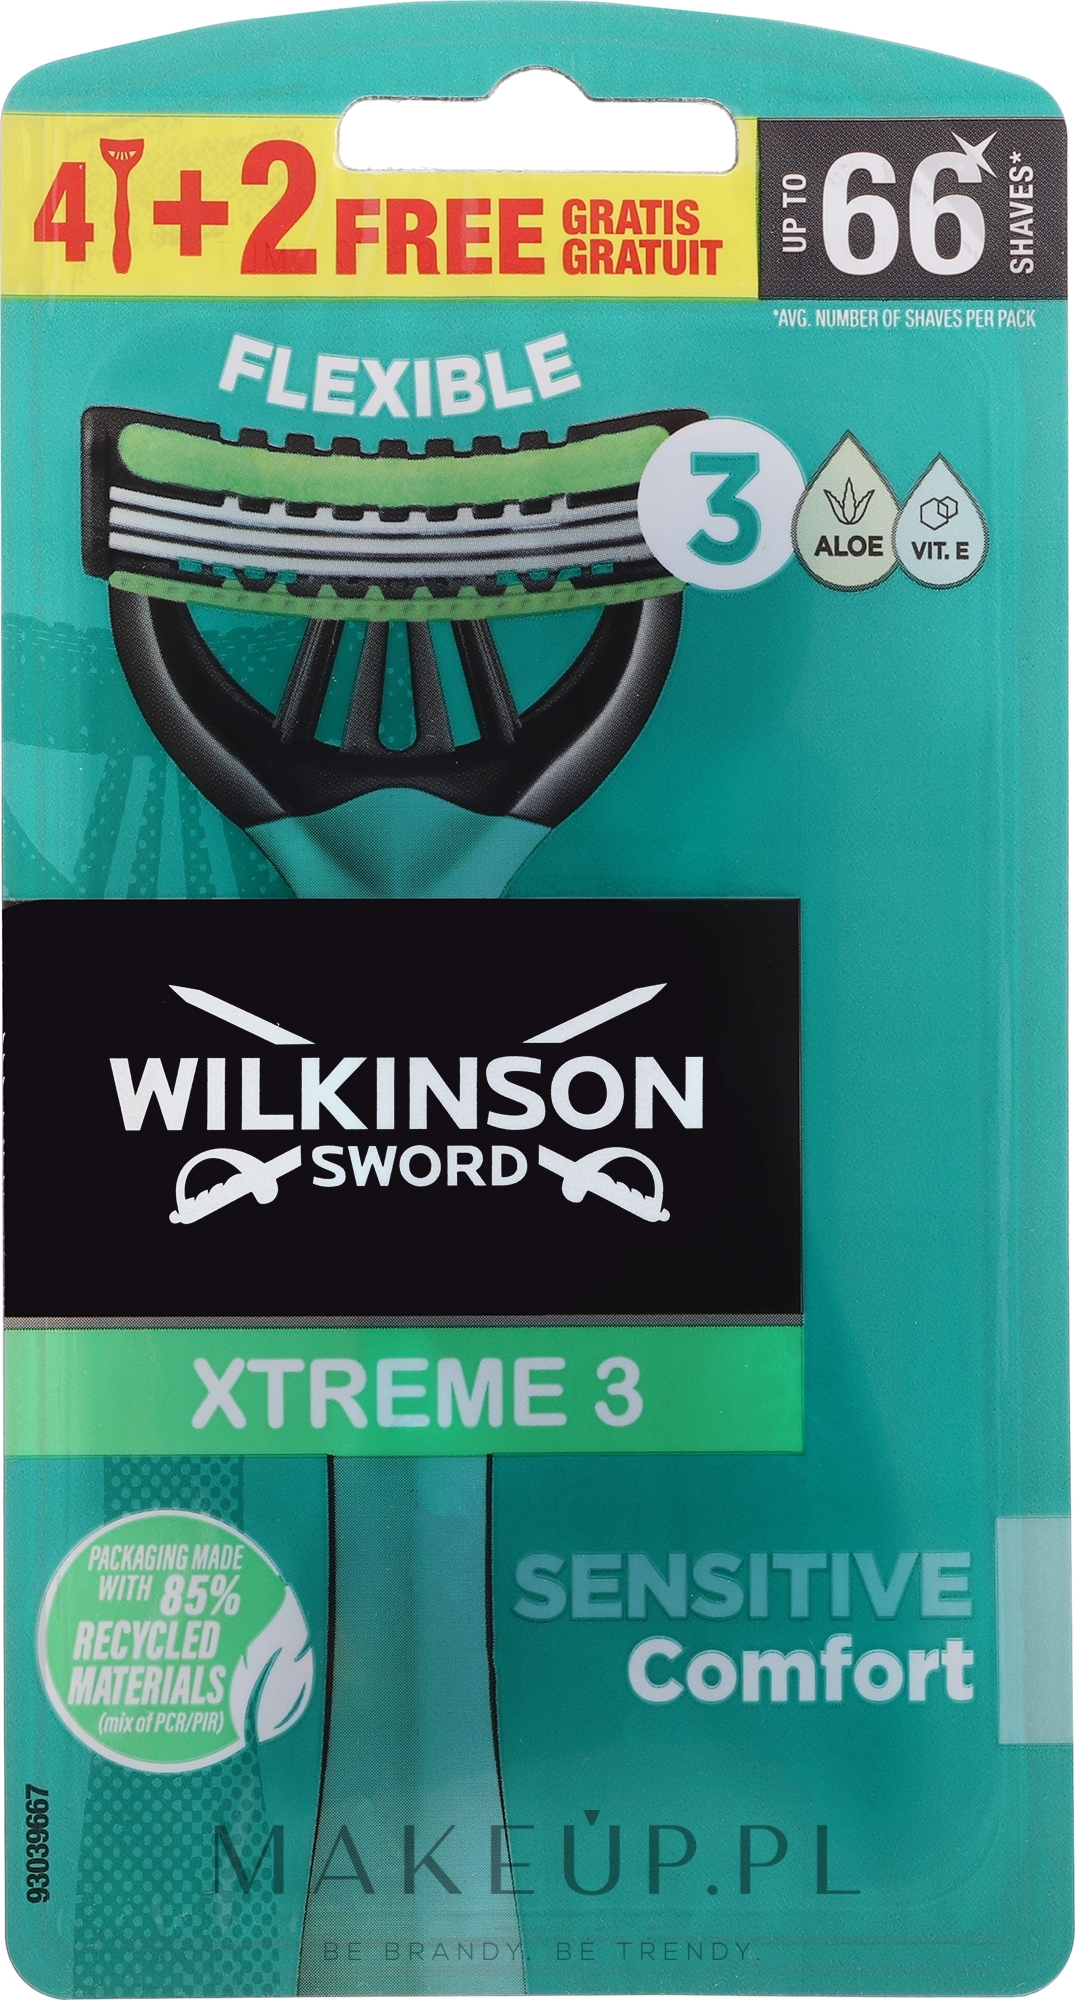 Jednorazowe maszynki do golenia dla mężczyzn, 6 szt. - Wilkinson Xtreme 3 Sensitive Comfort — Zdjęcie 6 szt.